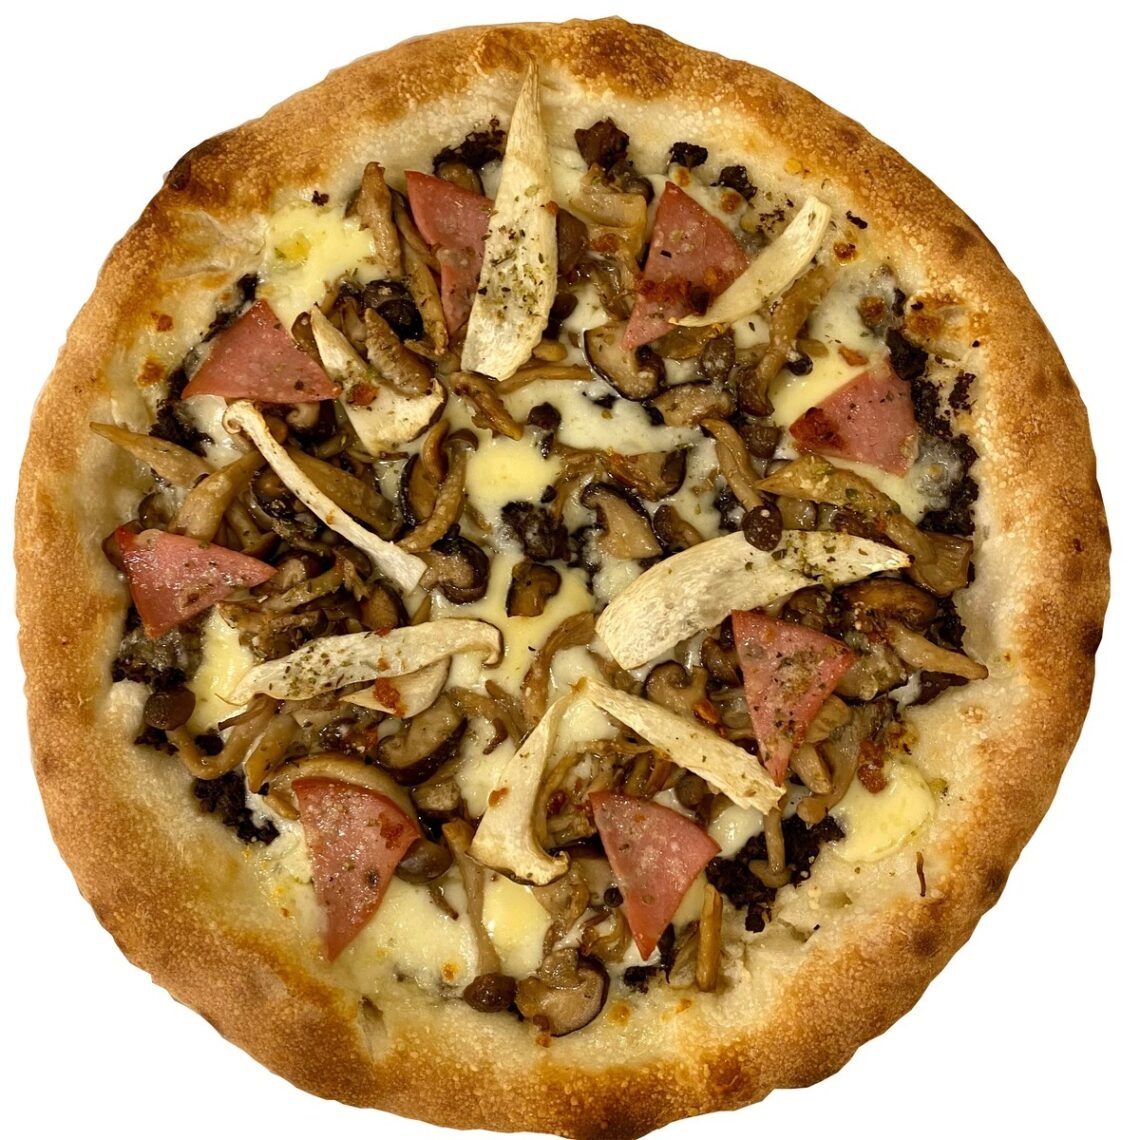 きのことハムのピザ
Mushroom Pizza
1,750 円(税込)